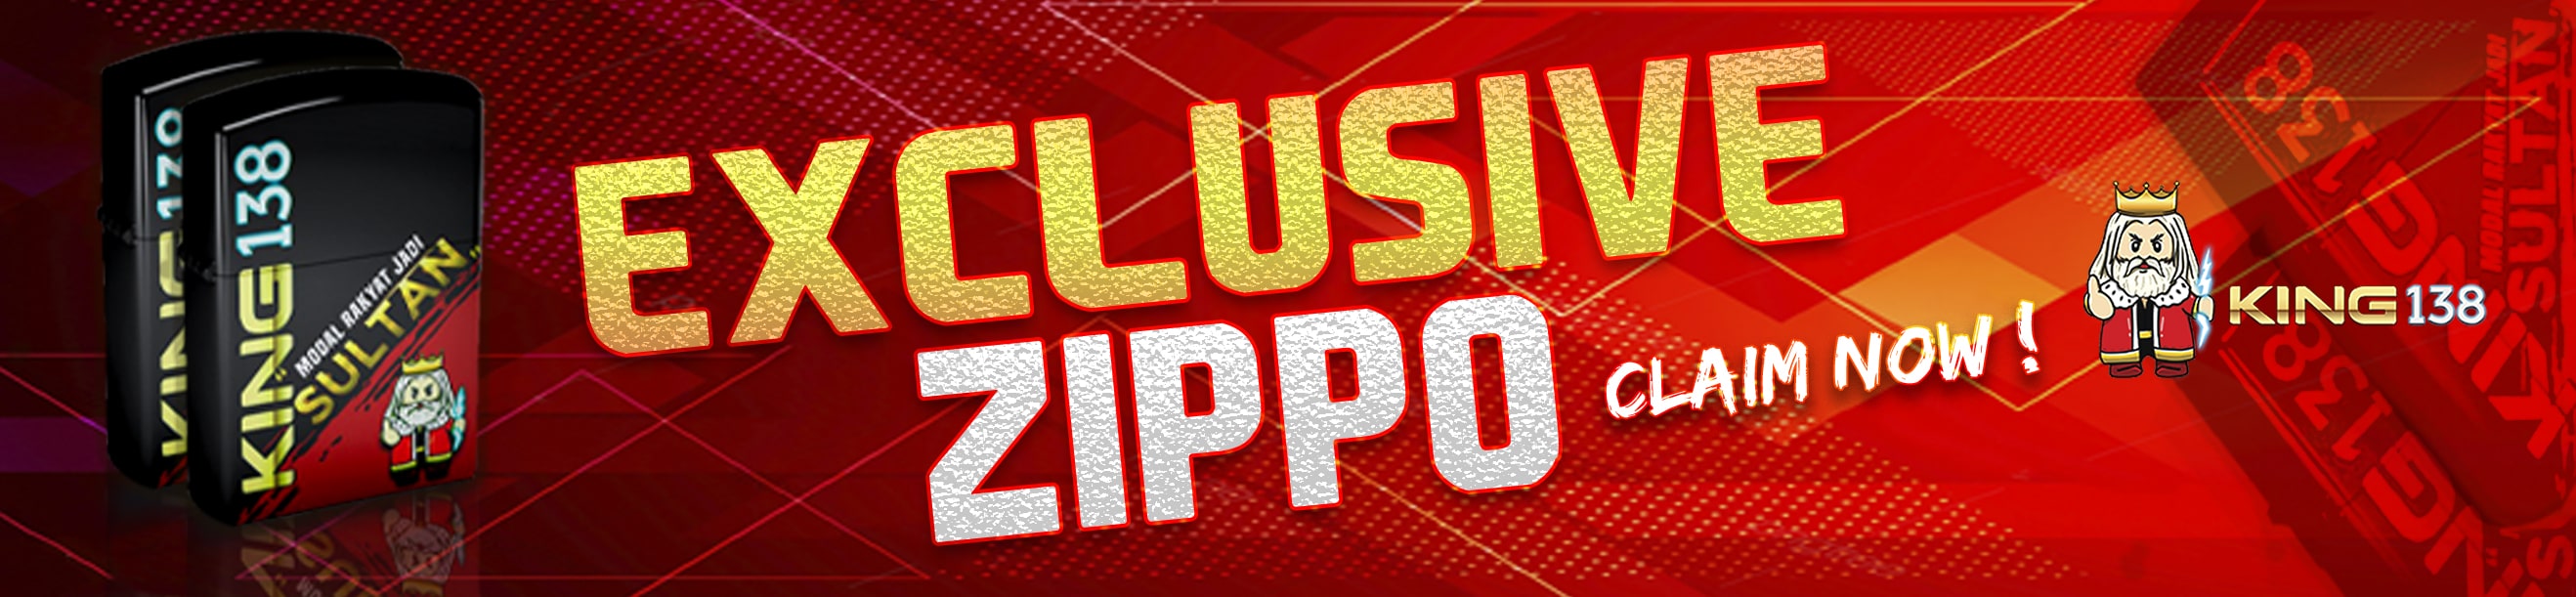 Zippo Exclusive